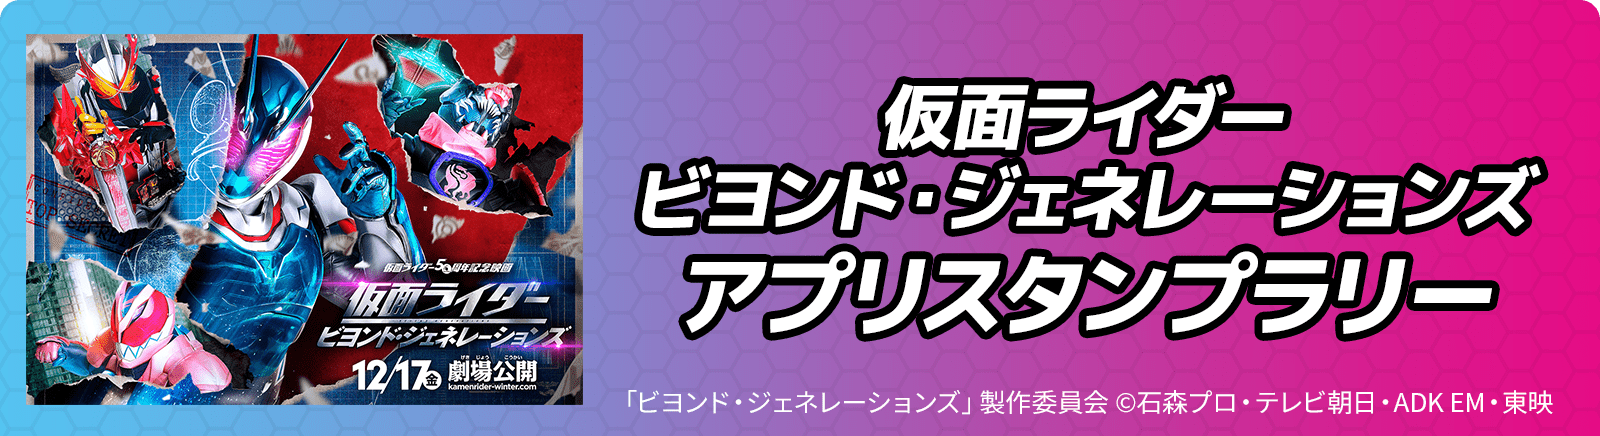 仮面ライダー ビヨンド・ジェネレーションズ　アプリスタンプラリー